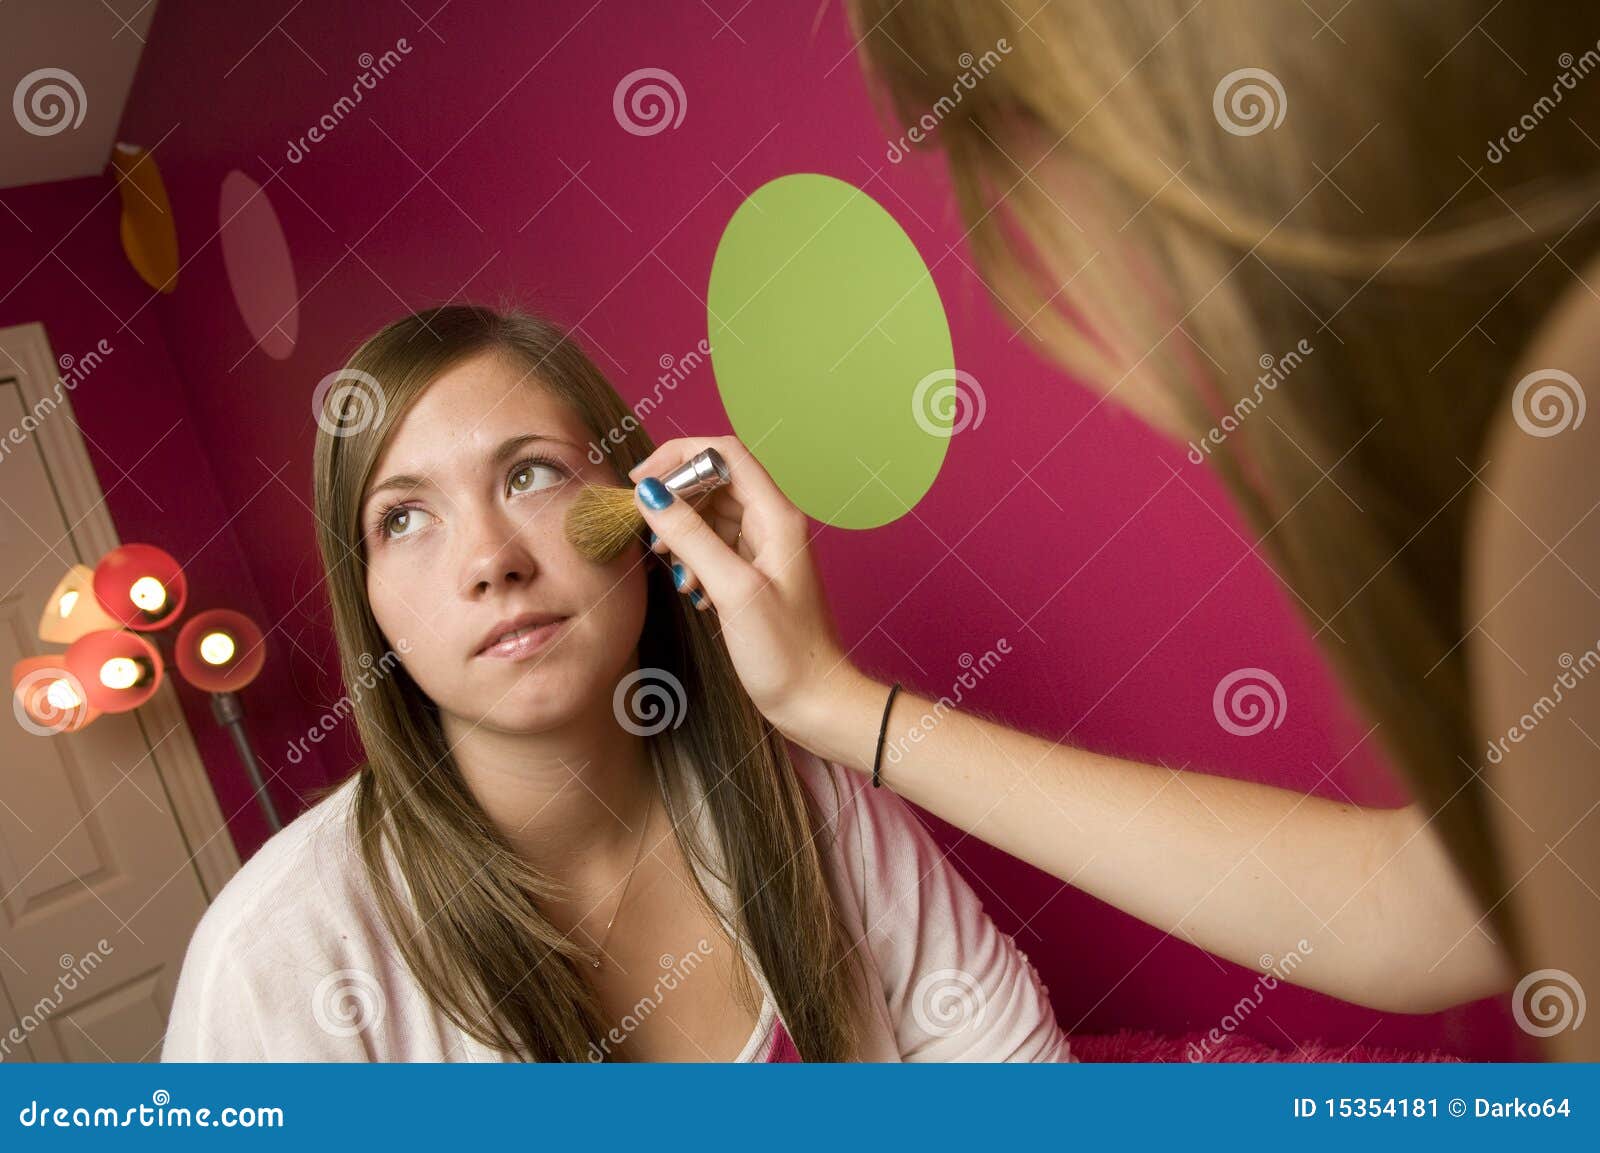 Teenage Girls Applying Makeup Stock Image Image Of Fresh Applying 15354181